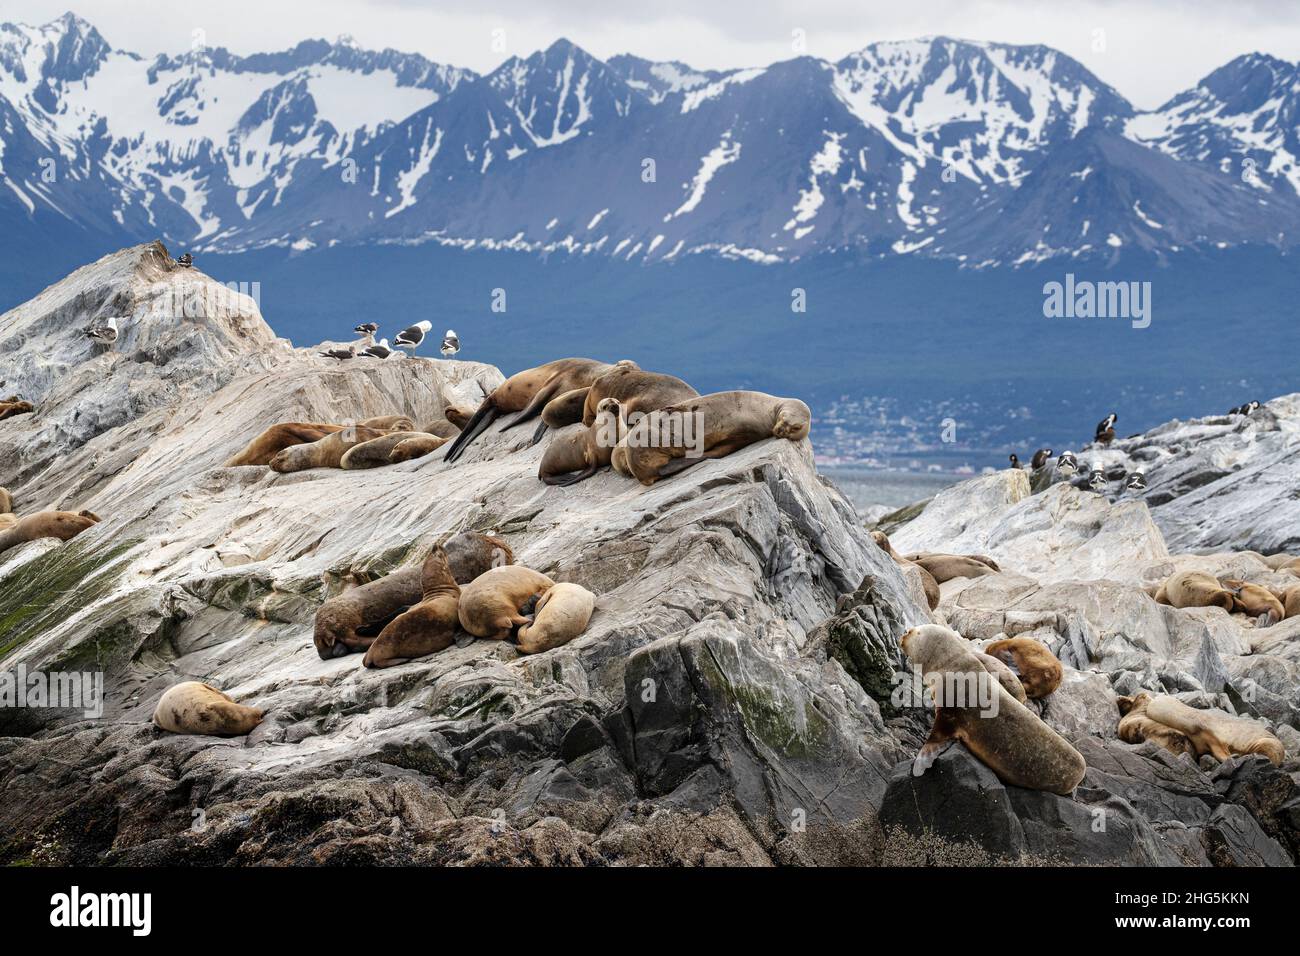 Des lions de mer d'Amérique du Sud, Otaria flavescens, femelles adultes, ont été transportées sur un petit îlot près d'Ushuaia, en Argentine. Banque D'Images